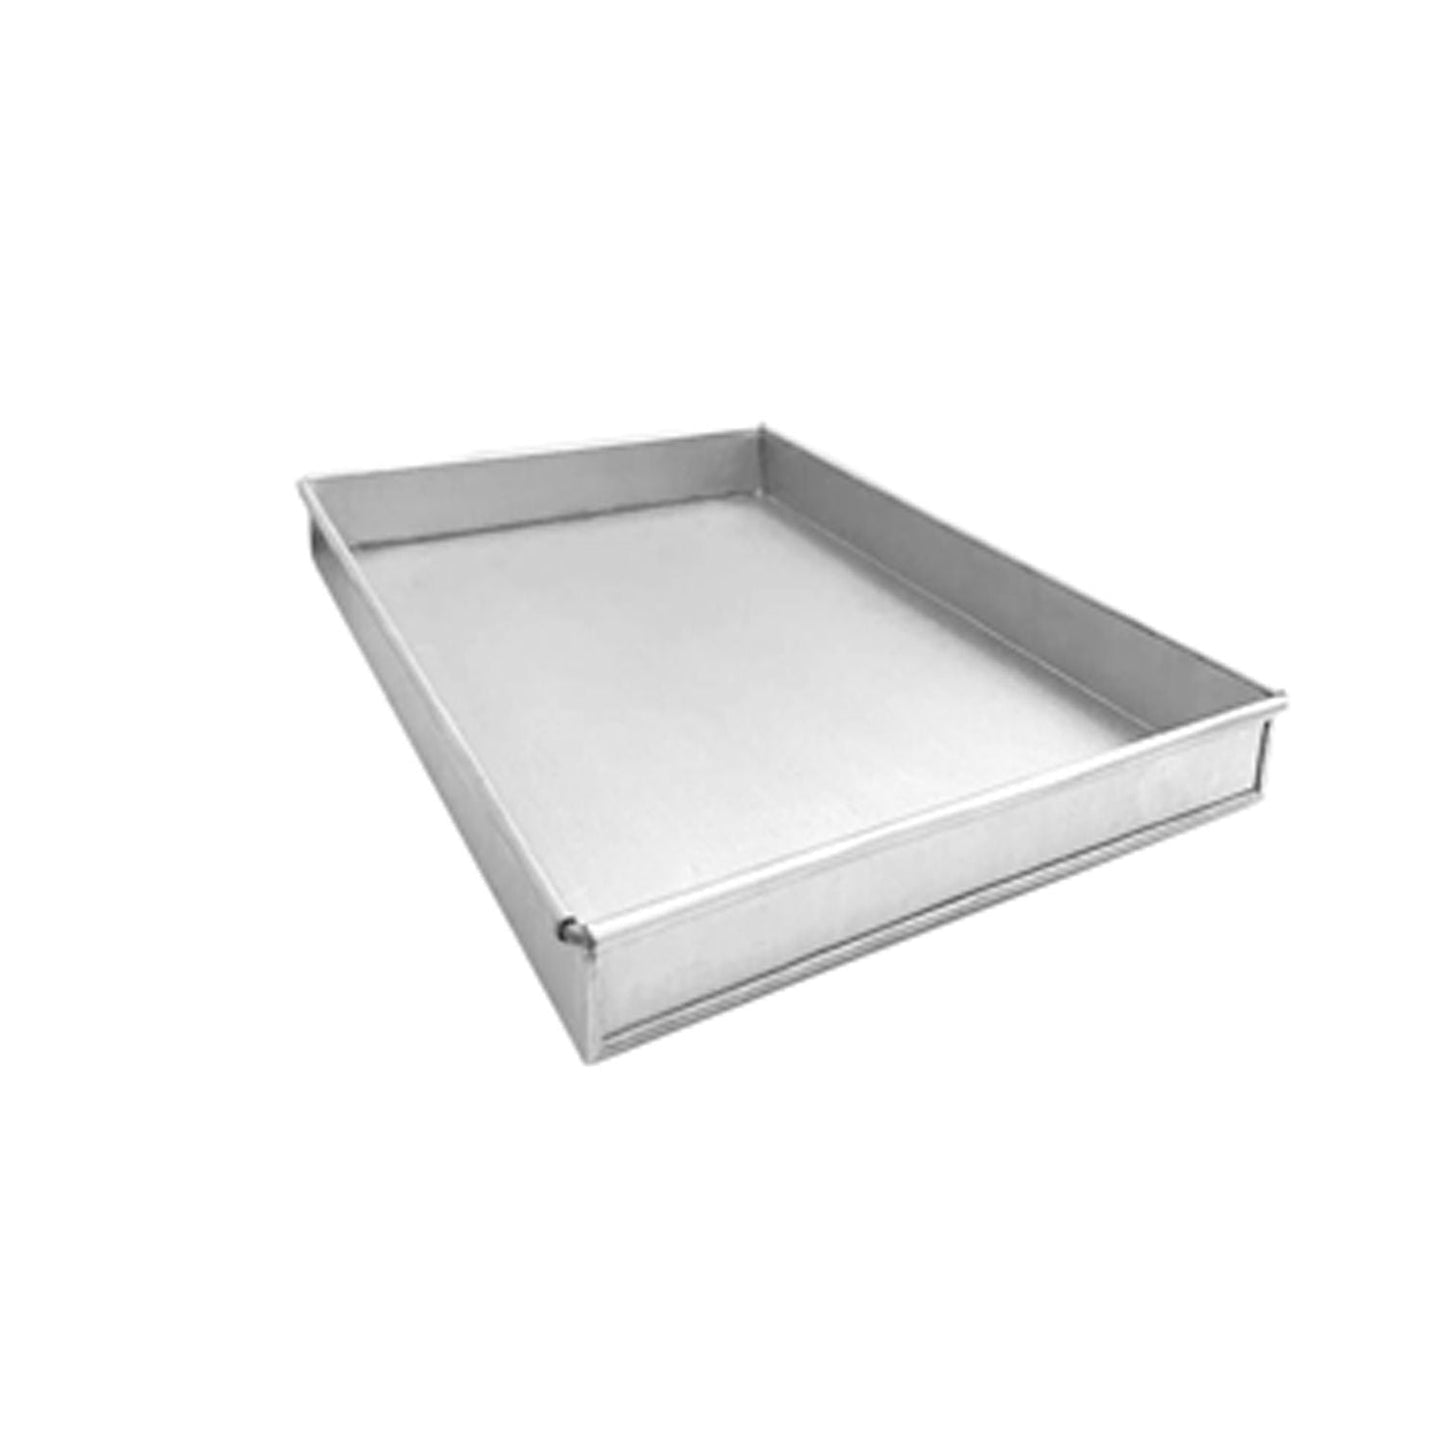 Aluminised Baking Tray - 300 x 200 x 25 mm - Mini